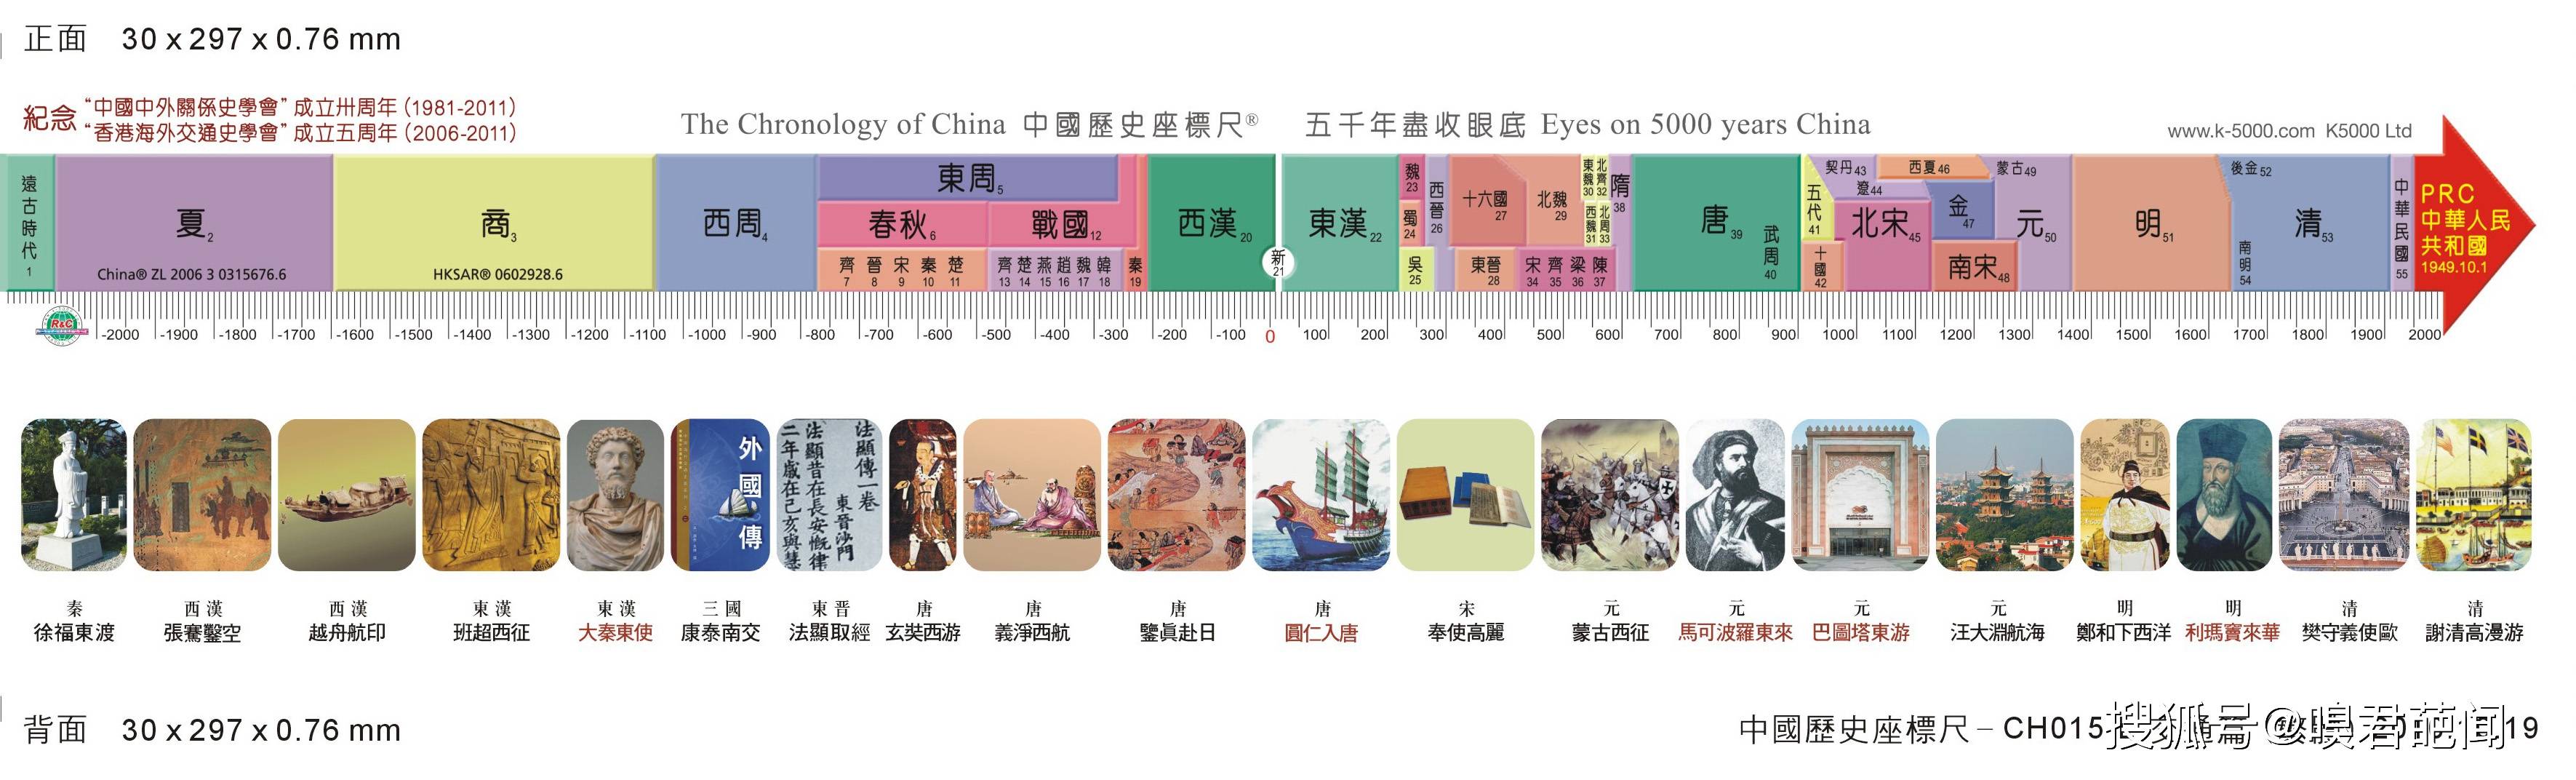 中国历史朝代年表